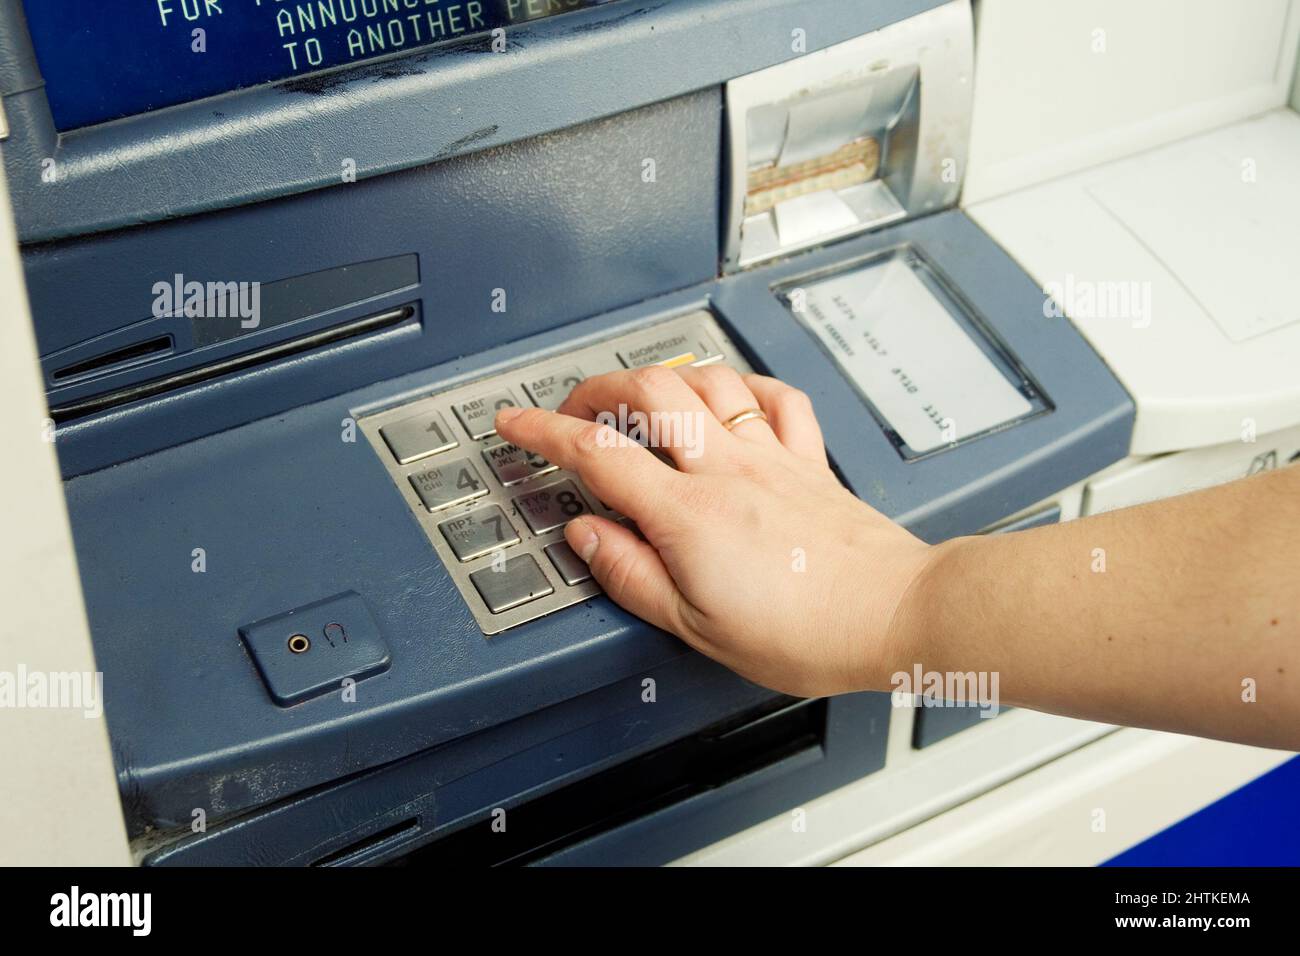 Saisie manuelle du code PIN du distributeur automatique de billets Banque D'Images